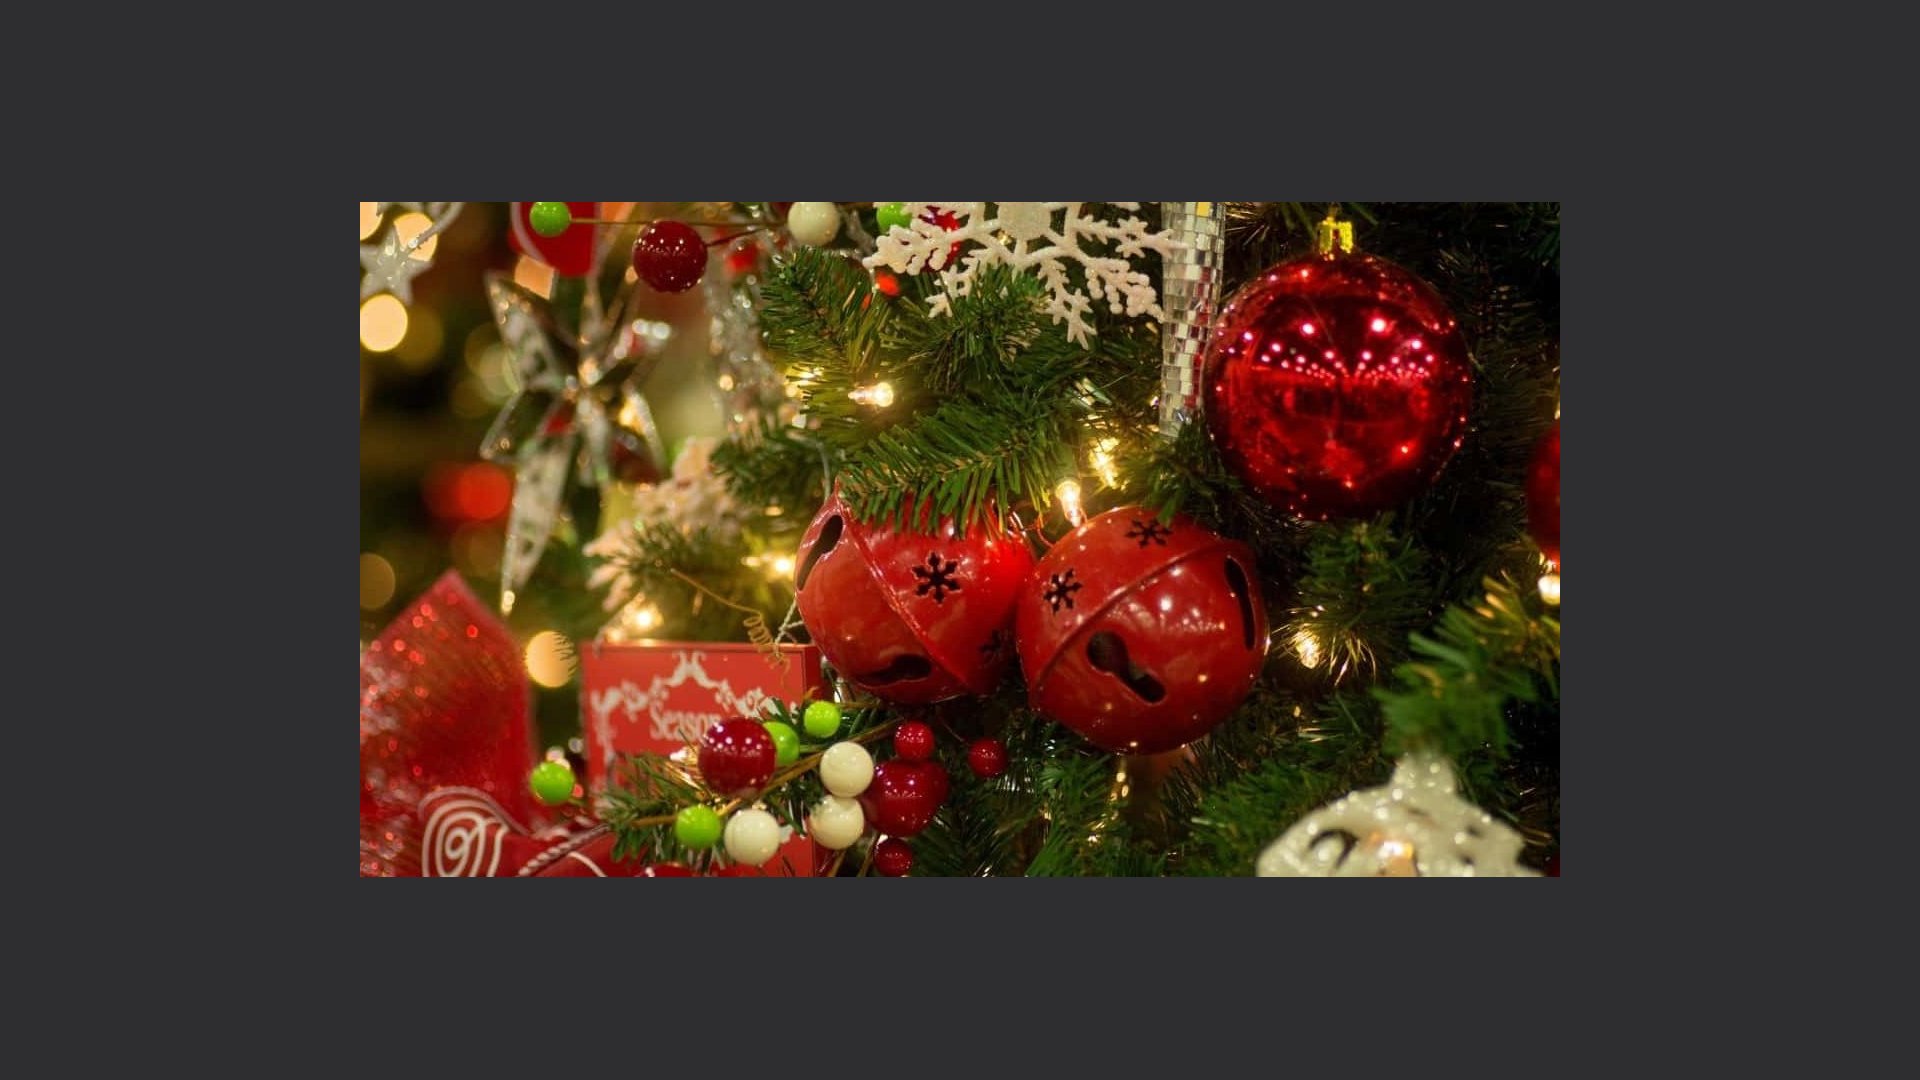 Il Significato Di Natale.Il Significato Delle Palline Sull Albero Di Natale